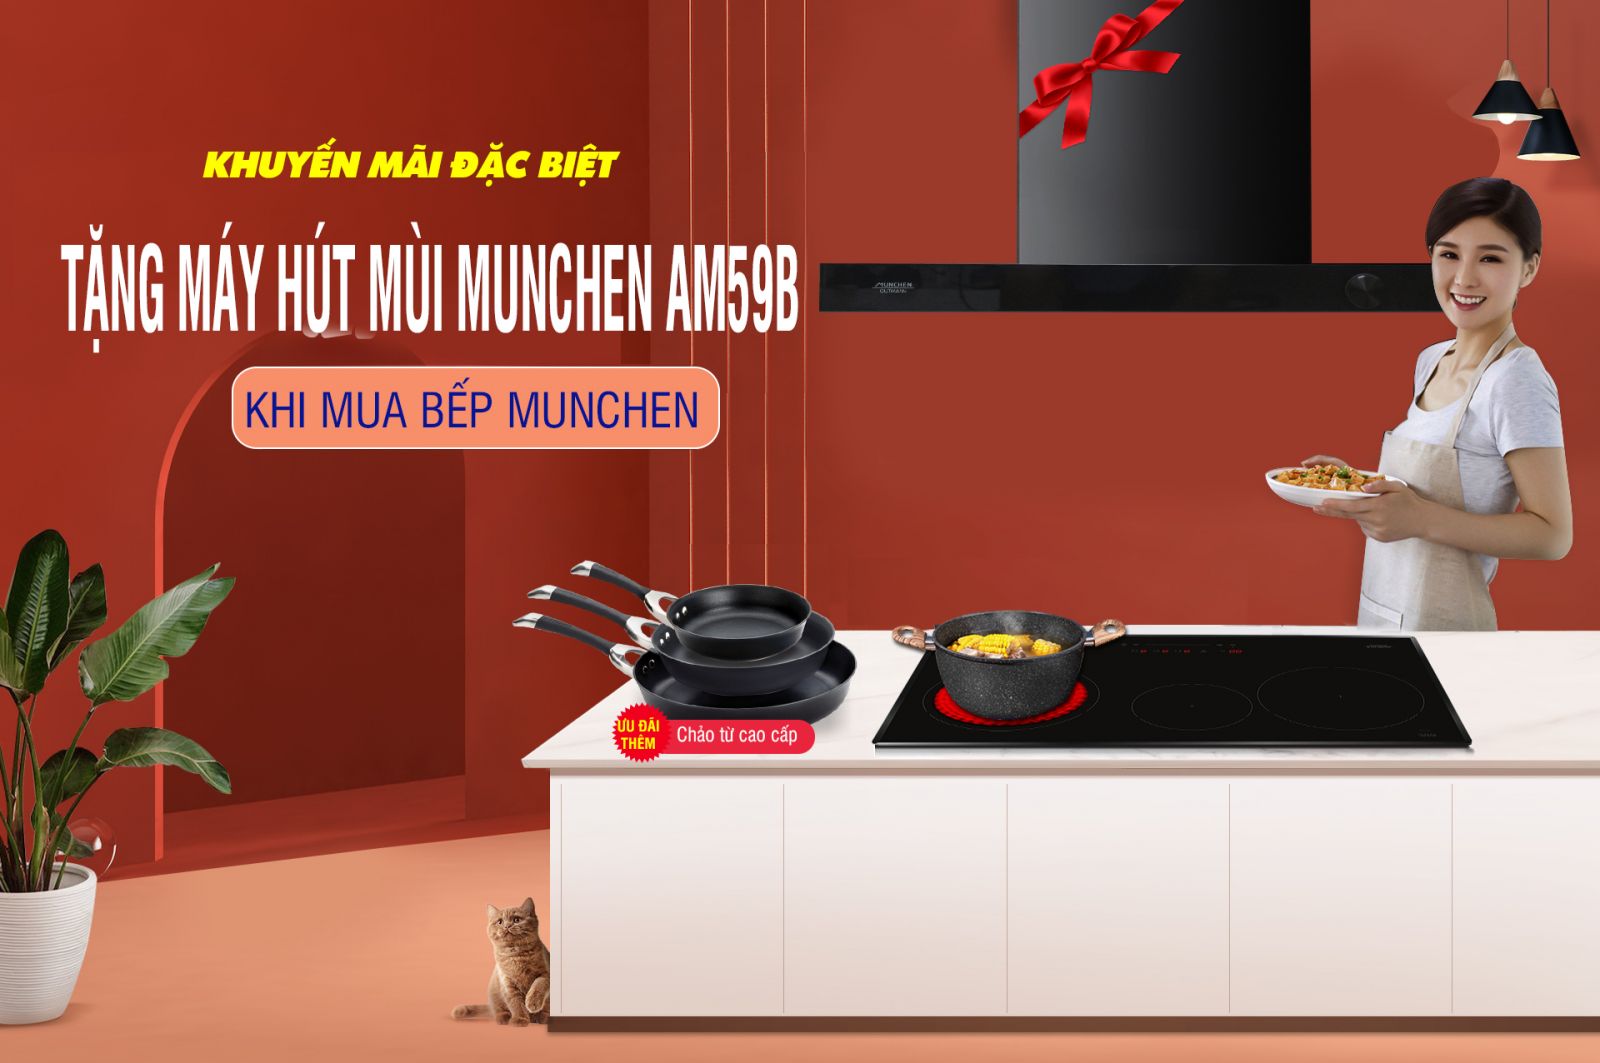 Siêu Hot: Tặng hút mùi 9 triệu khi mua bếp Munchen